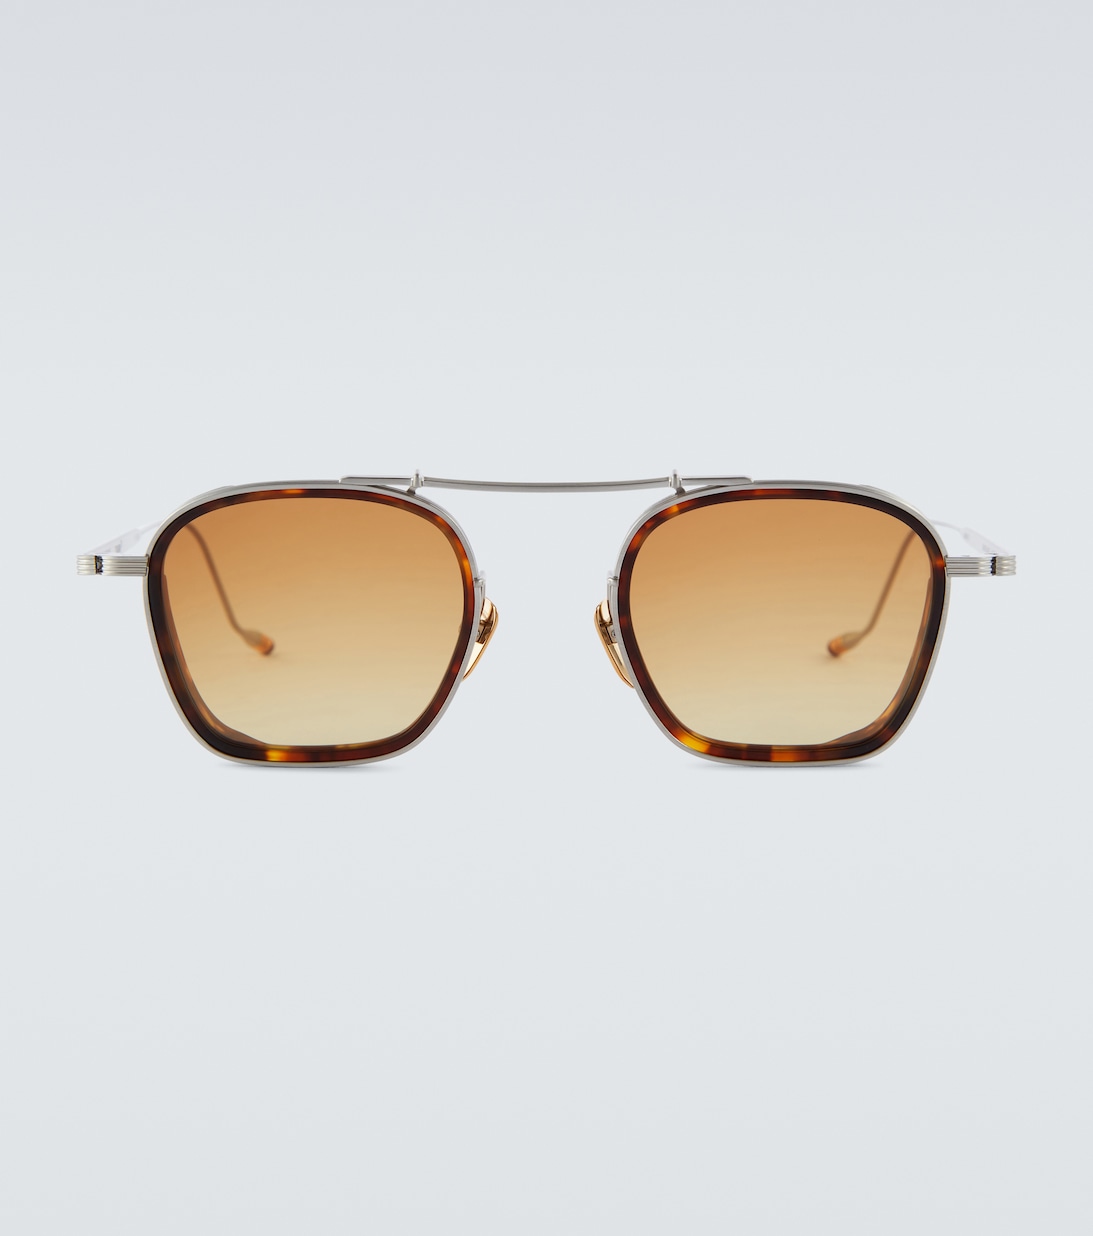 Солнцезащитные очки Baudelaire 2 Jacques Marie Mage, коричневый